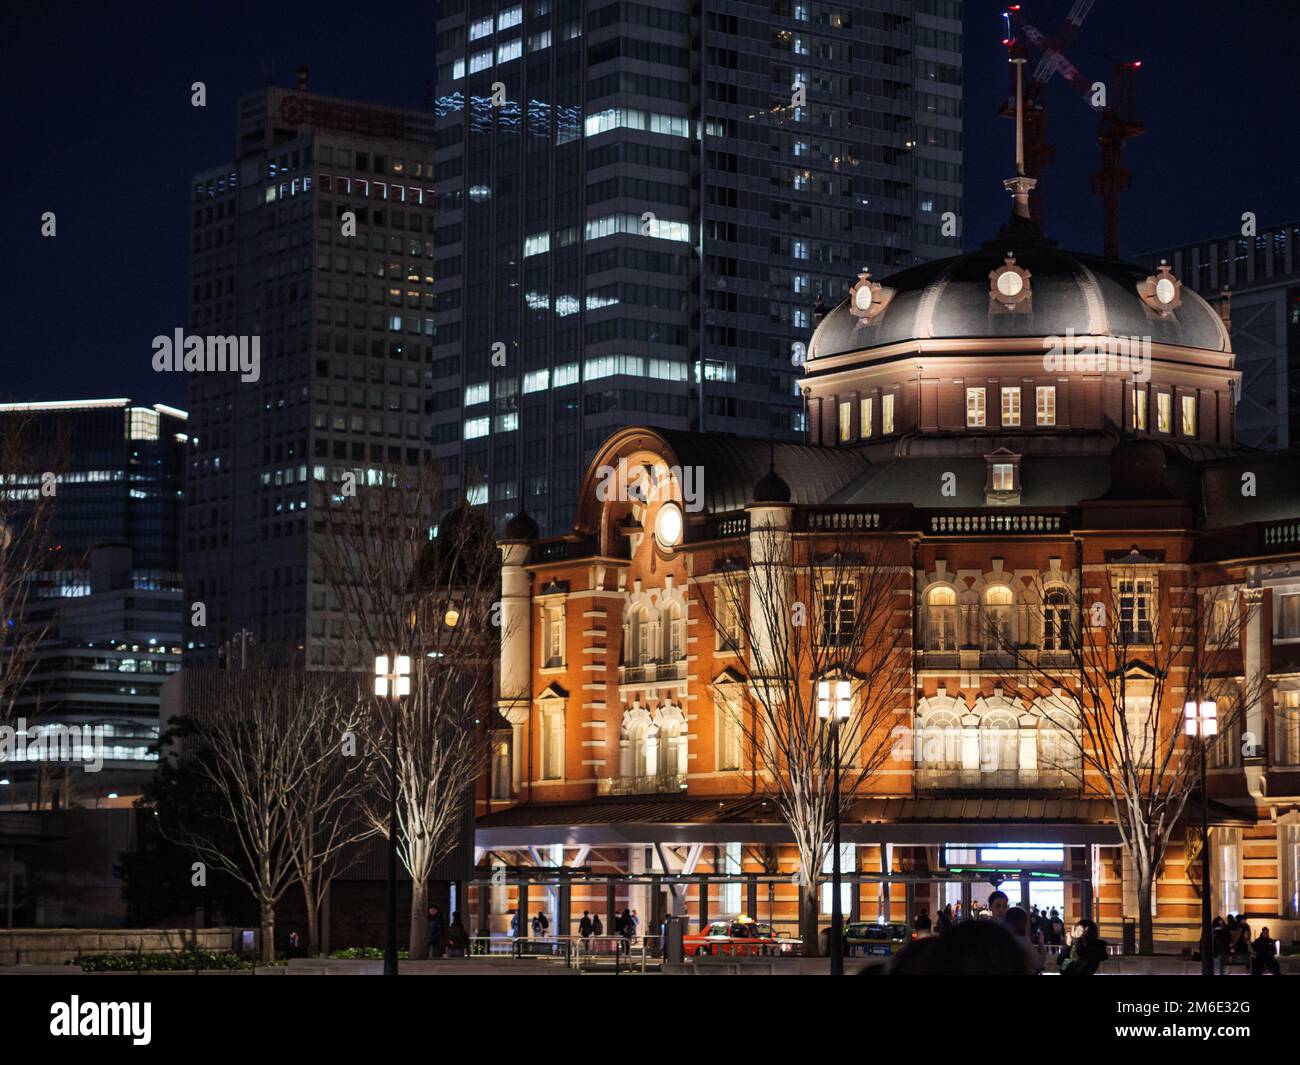 Tokio, Japan - 1 2 20: Die Seite des berühmten Backsteingebäudes des Bahnhofs von Tokio bei Nacht Stockfoto